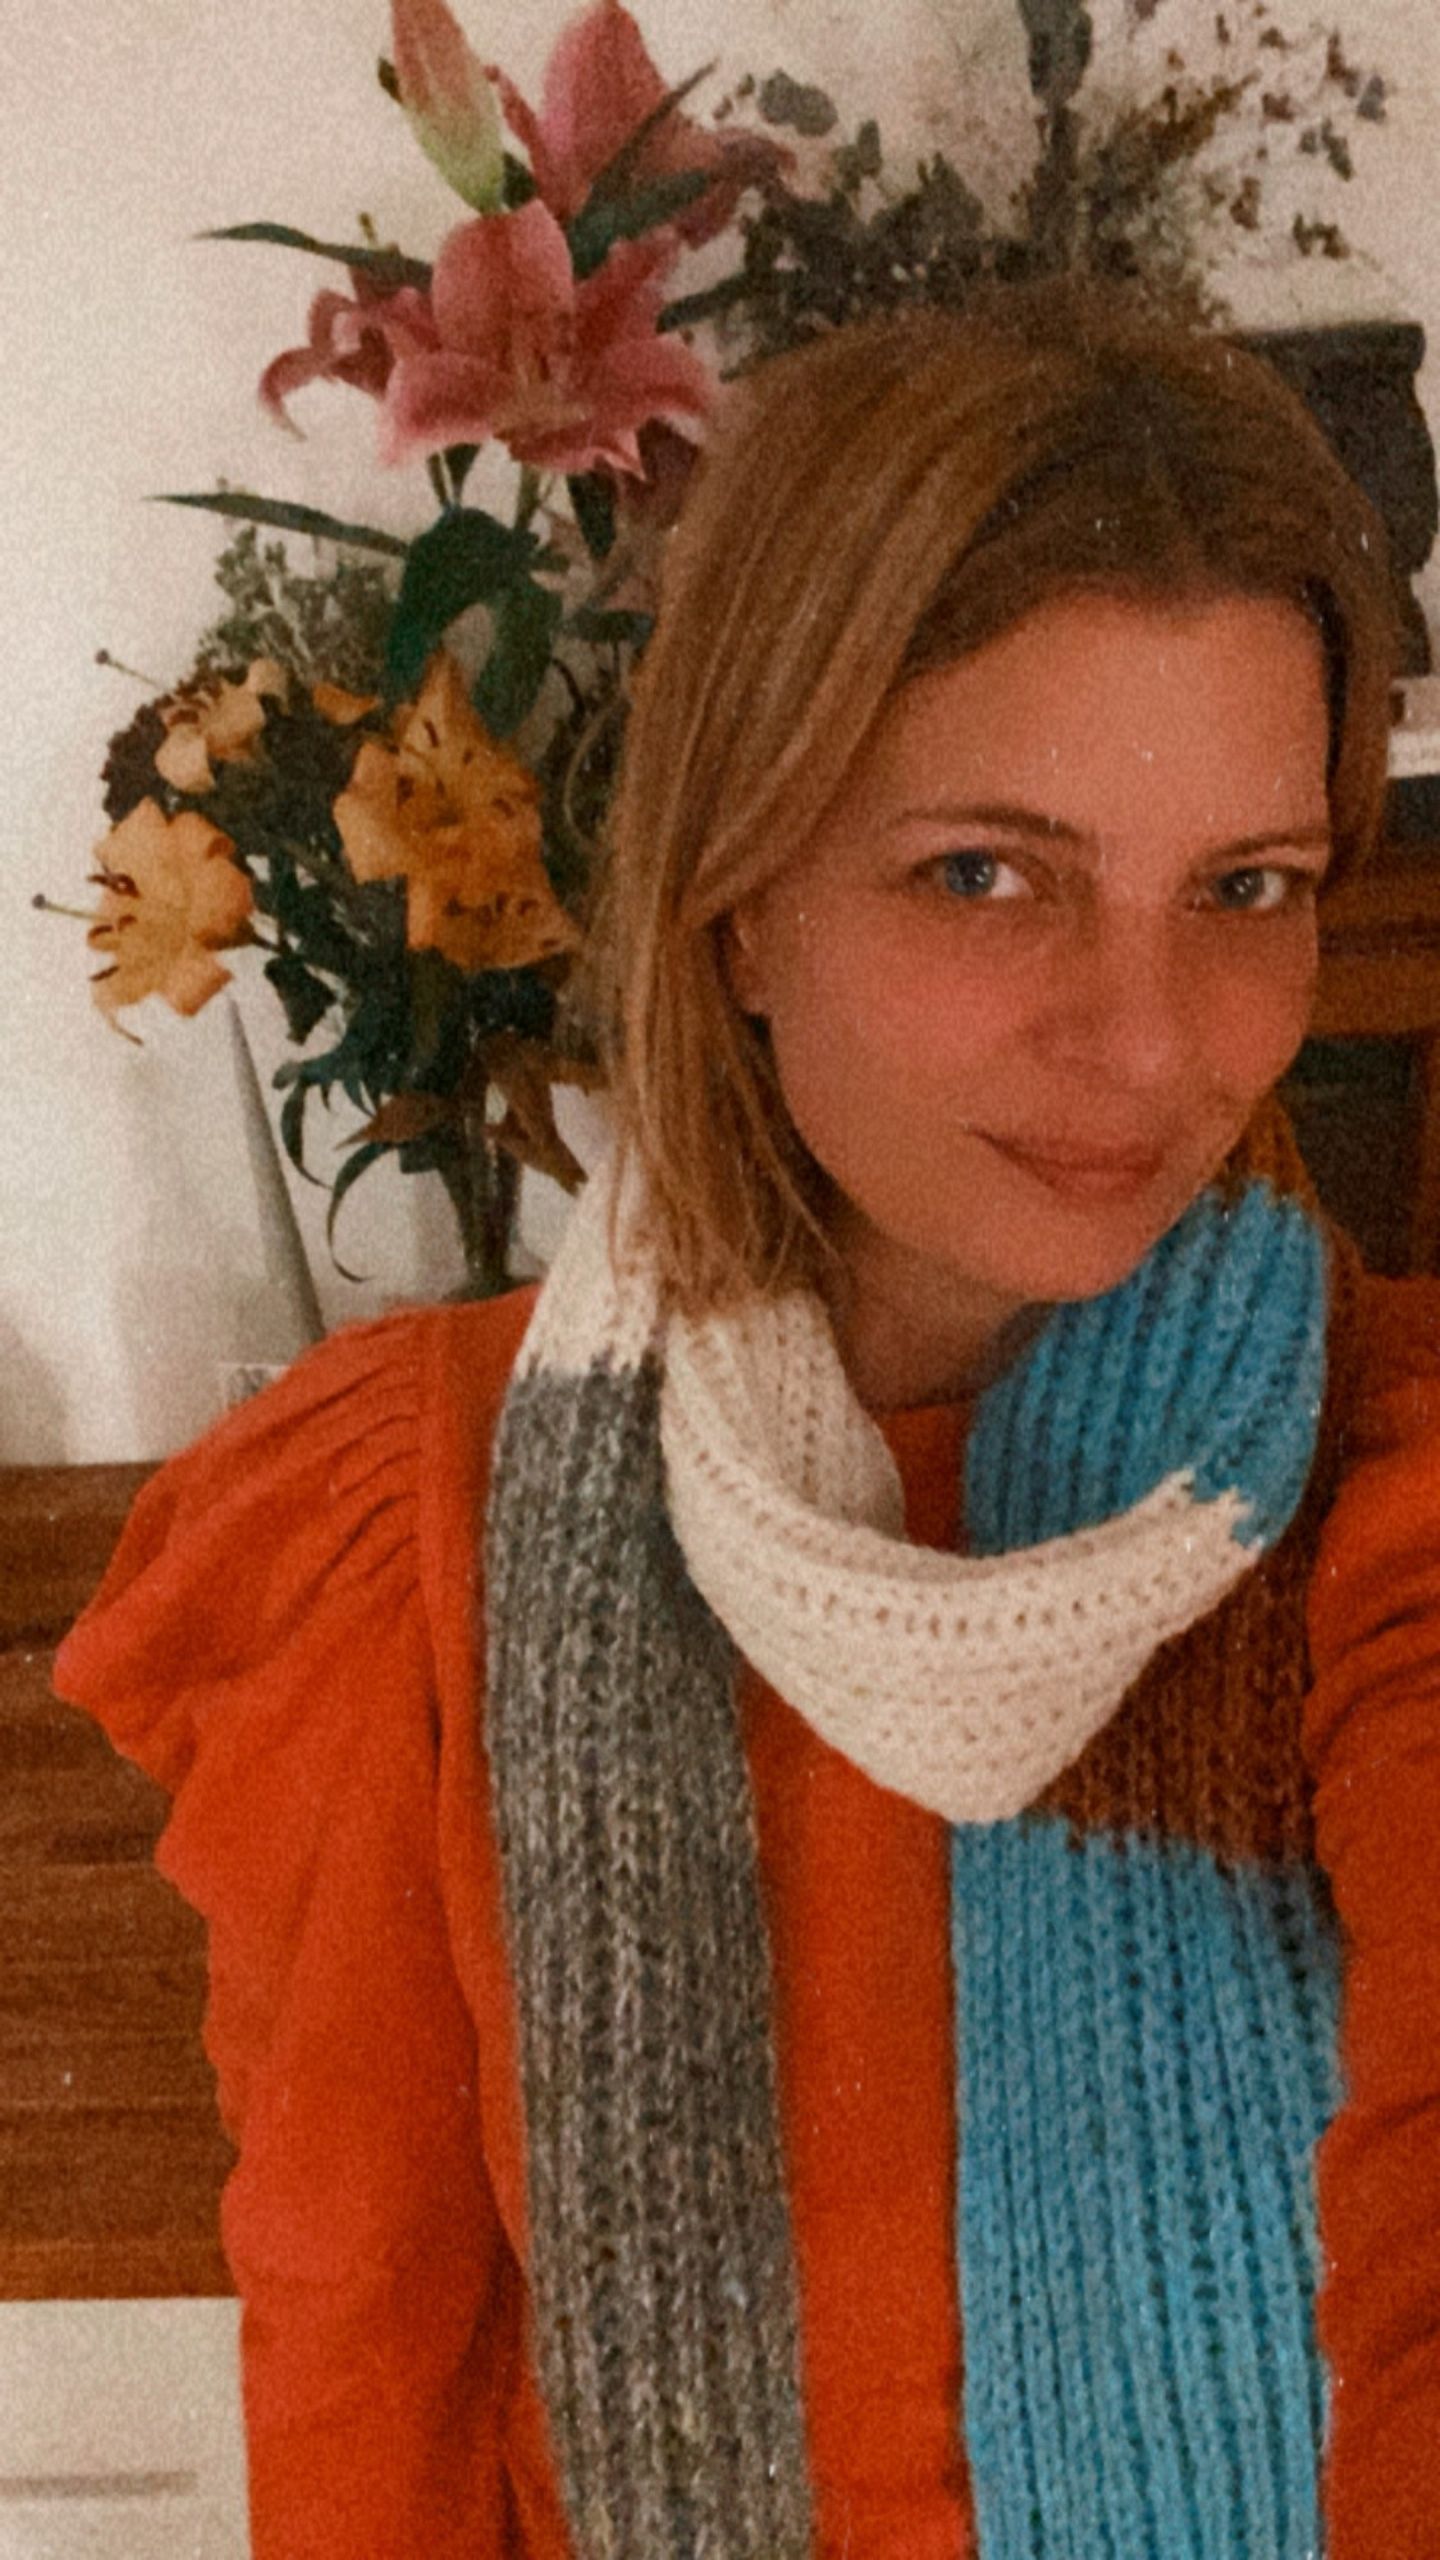 Ein Schal fürs Leben: Jördis Triebel